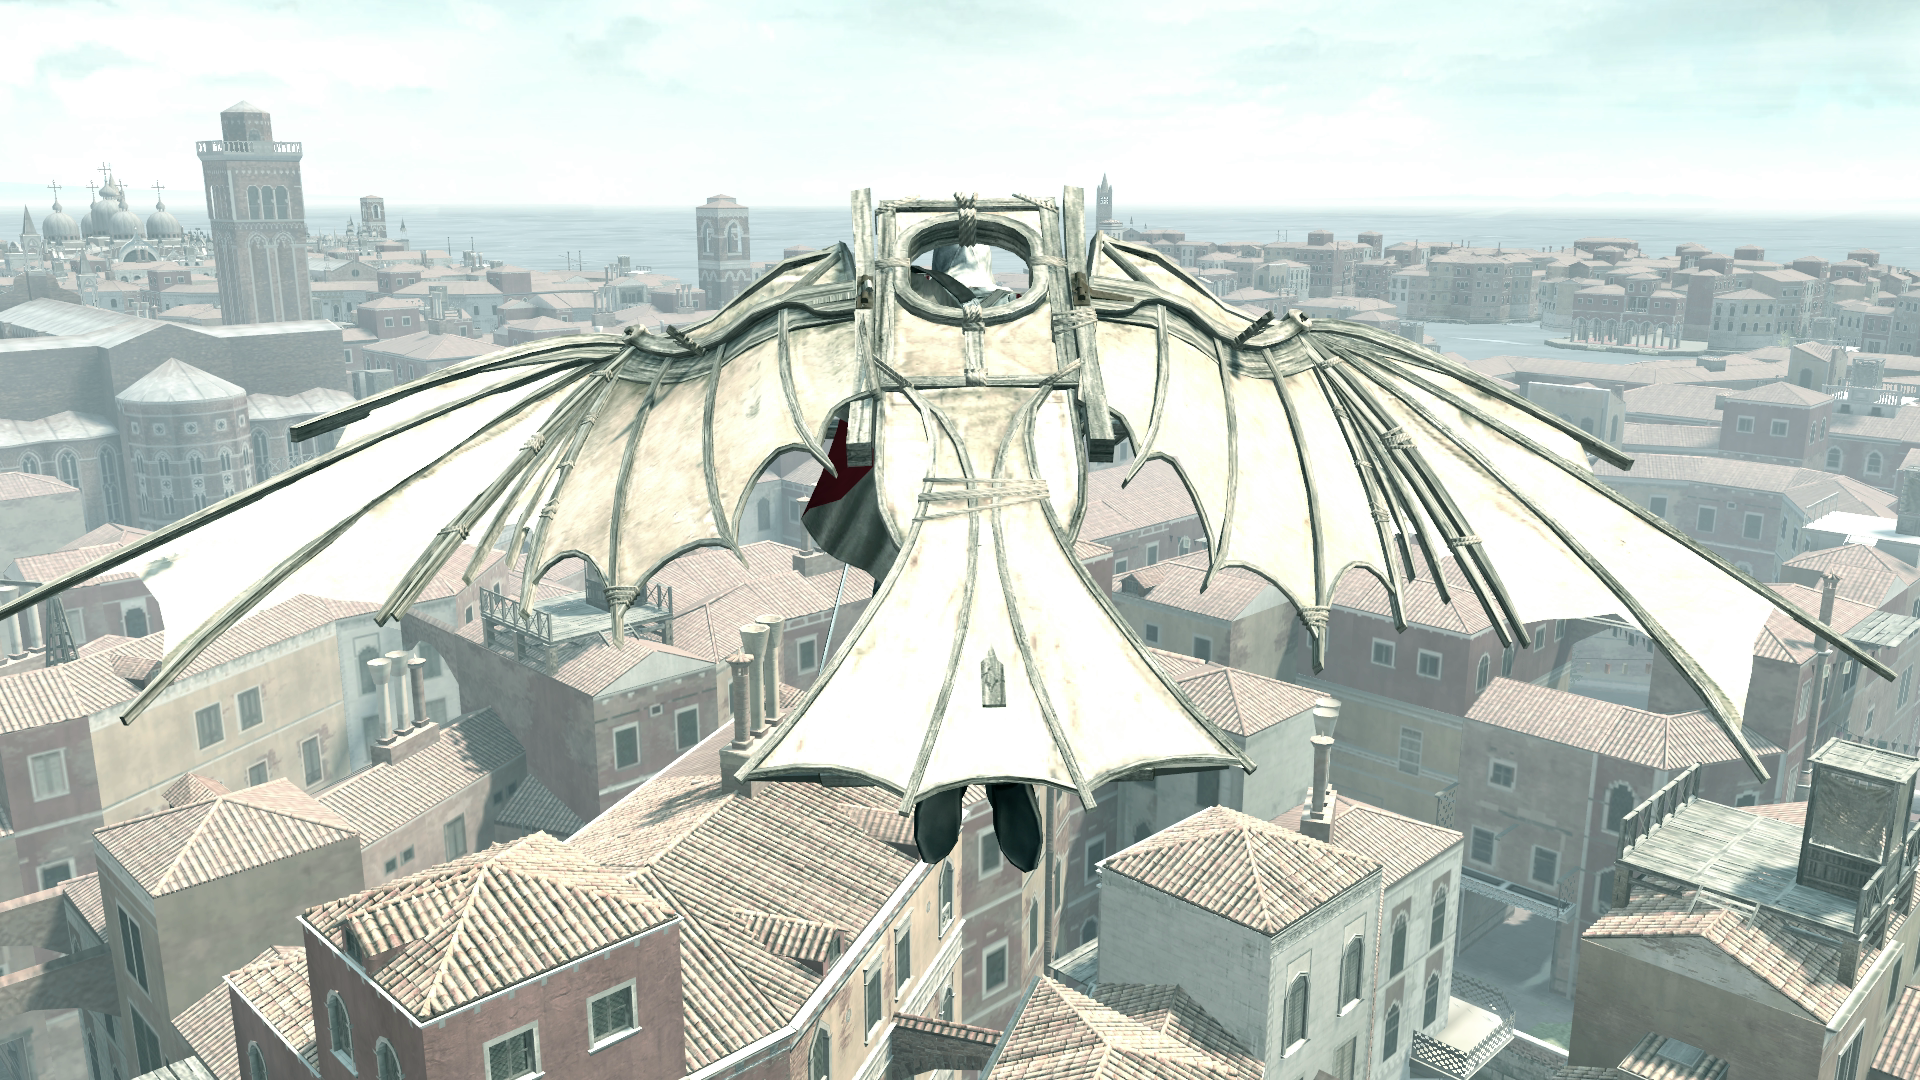 Assassin's Creed 2 Walkthrough Part 39 - Leonardo's Flying